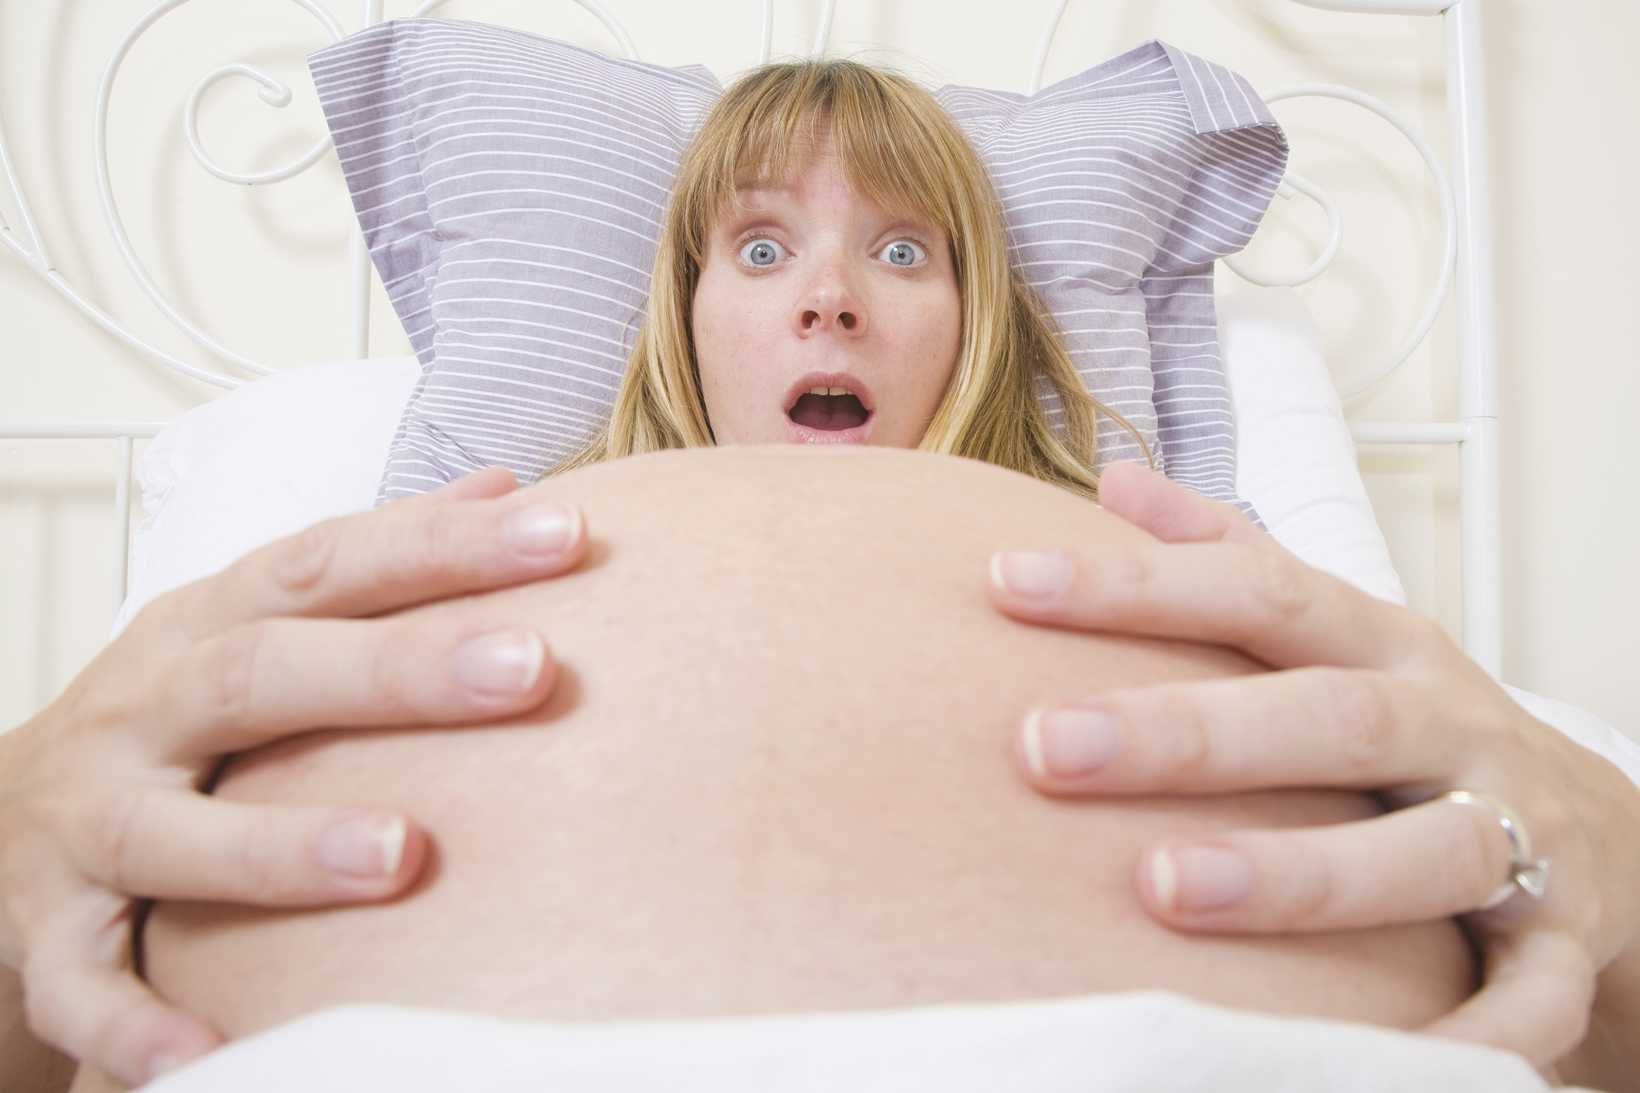 Боюсь рожать: как не бояться родов первый раз, что делать, как побороть страх перед родами - боюсь забеременеть, второй раз, советы психолога как справиться